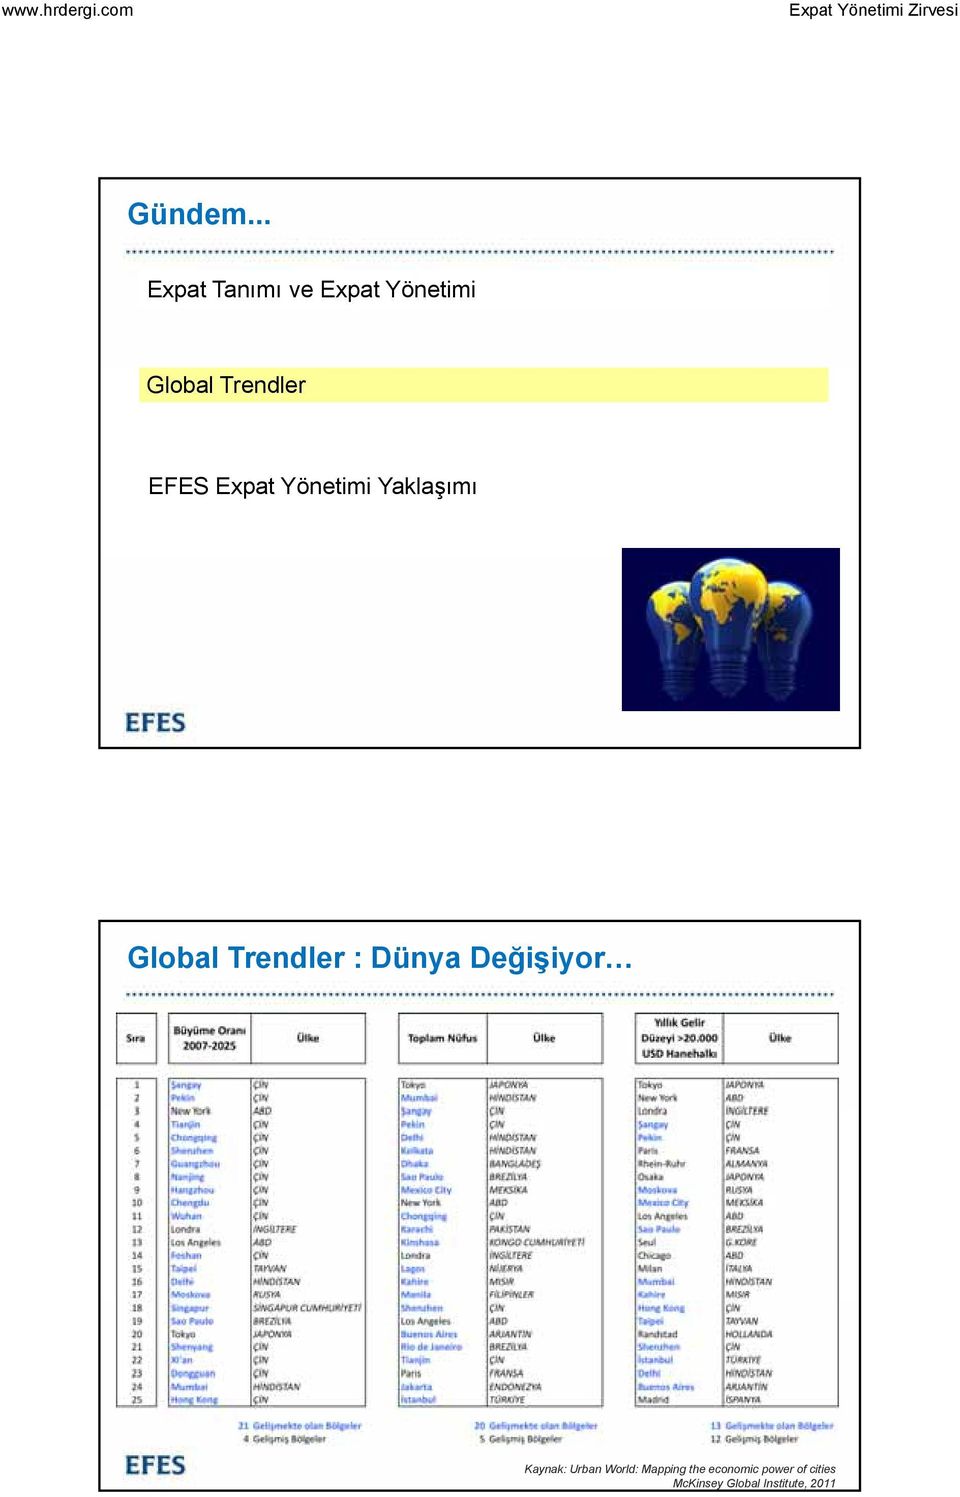 EFES Expat Yönetimi Yaklaşımı Global Trendler :